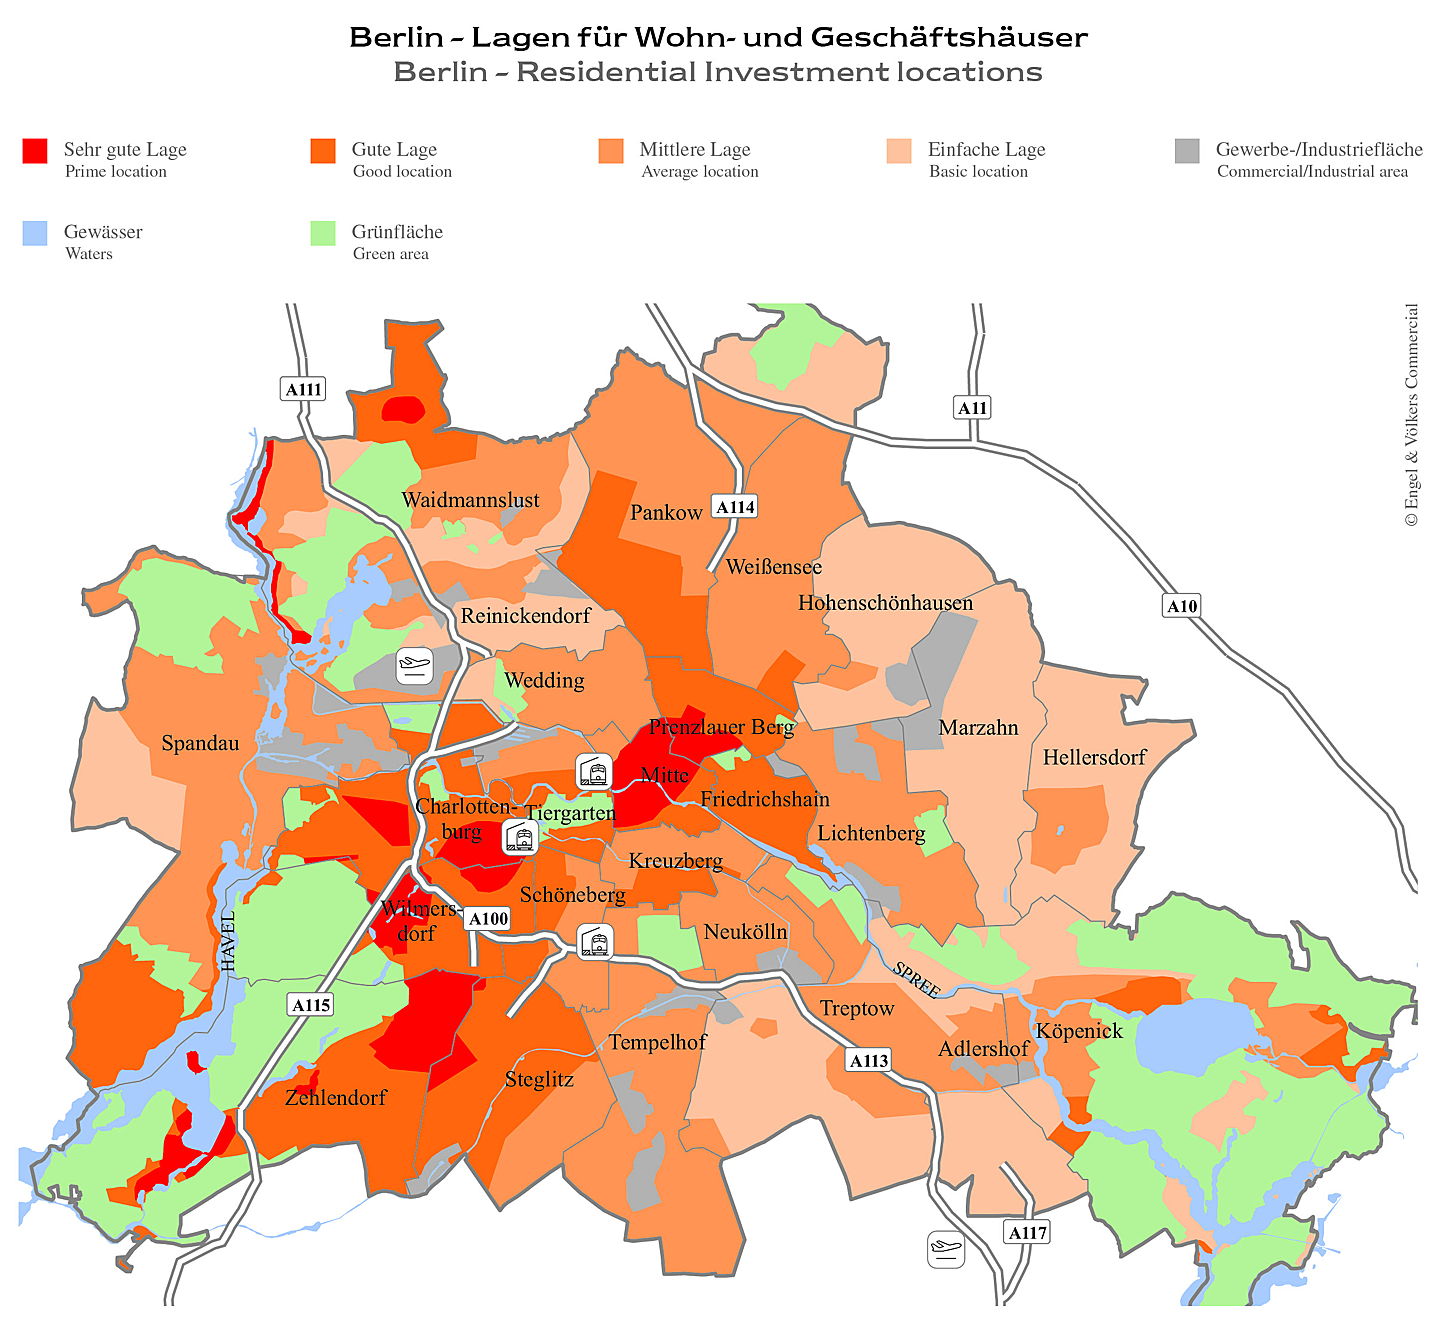  Berlin
- Berlin - Lagen für Wohn- und Geschäftshäuser – Marktreport Wohn- & Geschäftshäuser 2019/2020 – Engel & Völkers Commercial Berlin